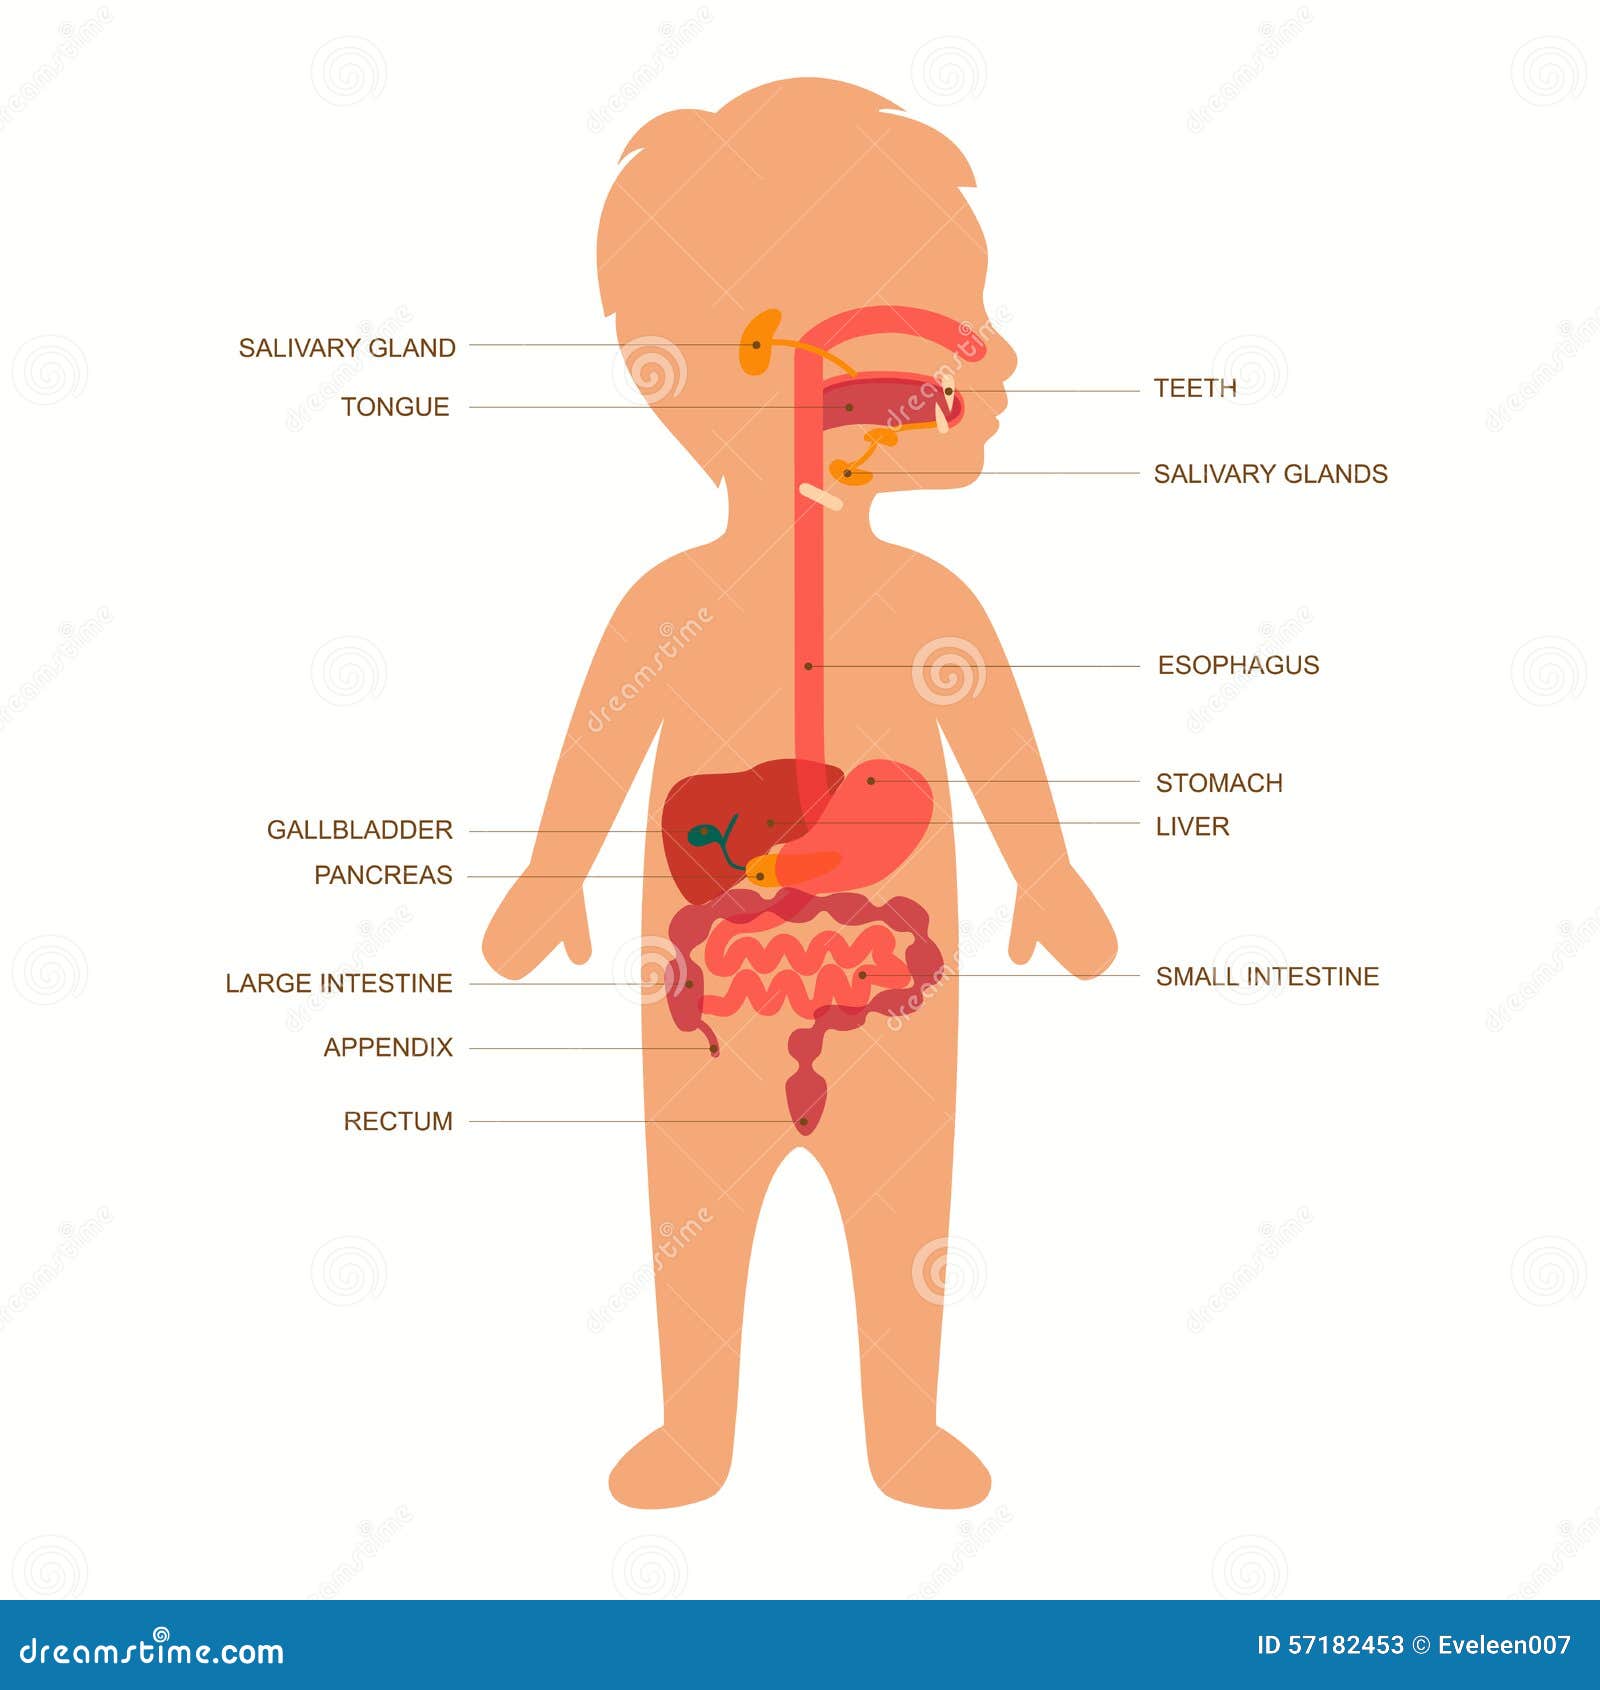 Stomach Cancer in Children - NCI